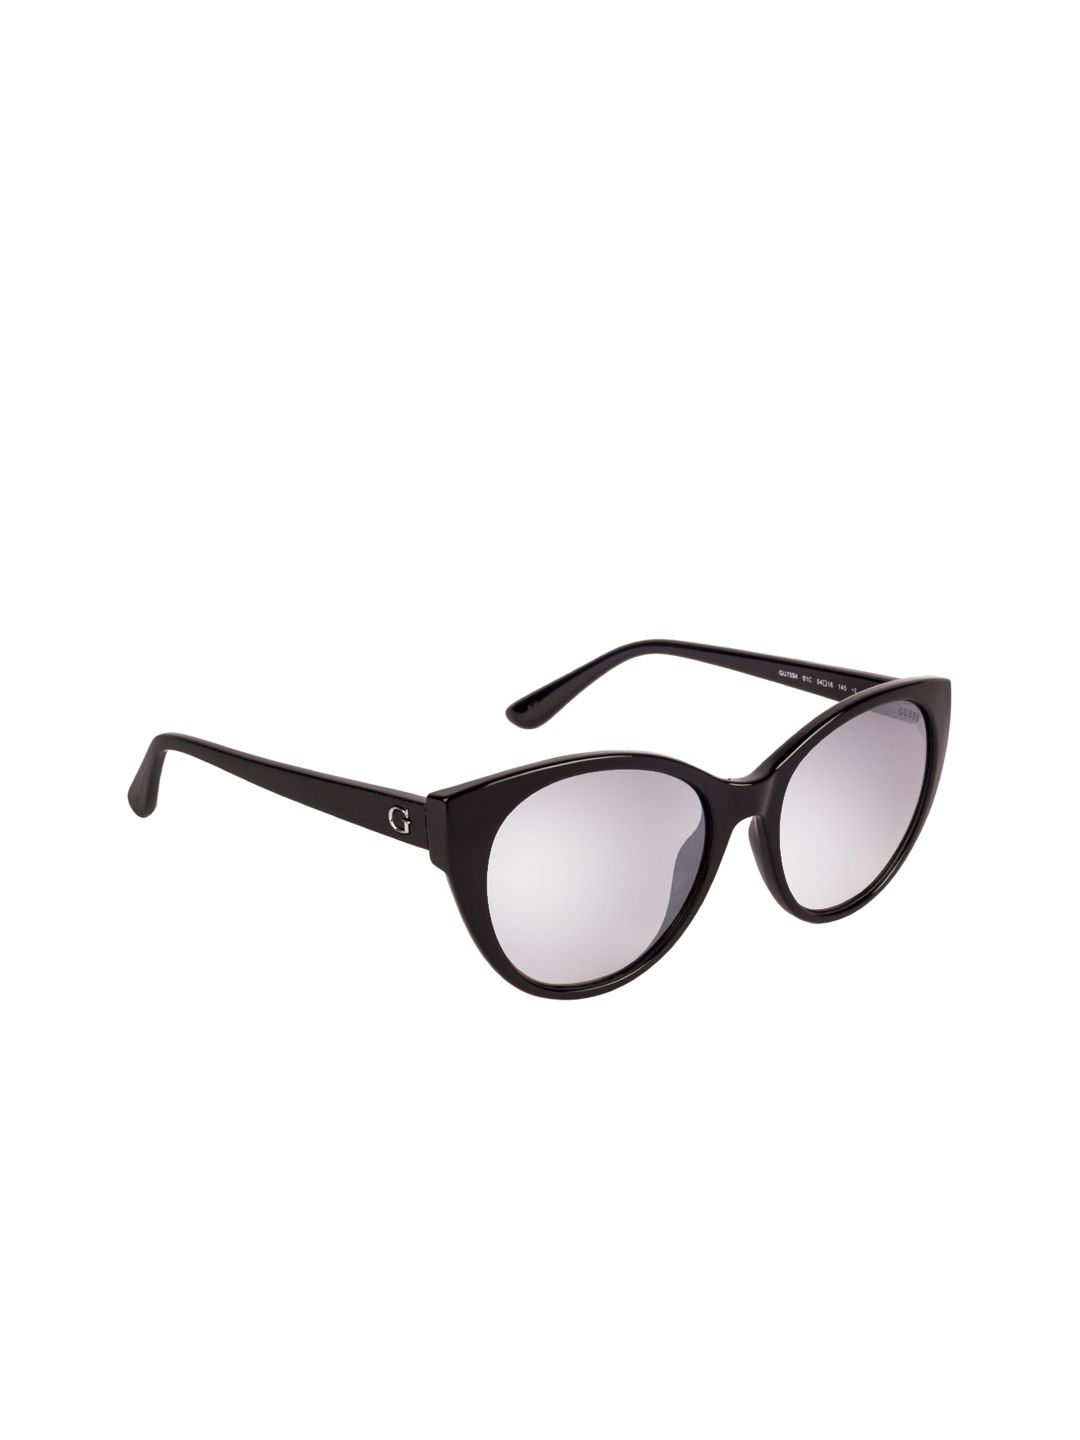 GUESS Women Cateye Sunglasses GU7594 54 01C Price in India